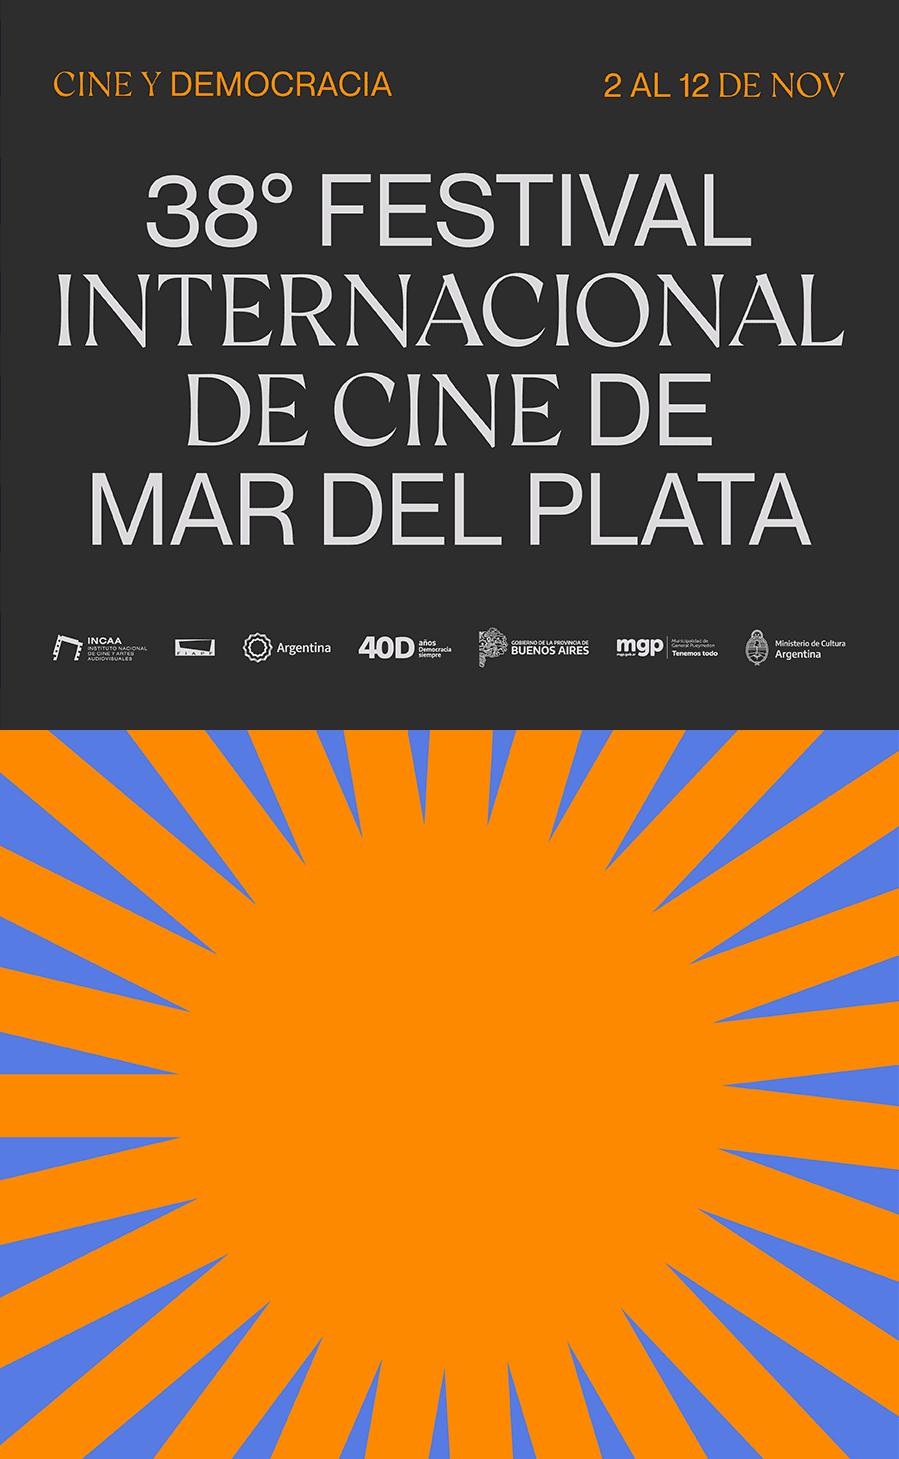 Imagen Institucional del Festival Internacional de Cine de Mar del Plata